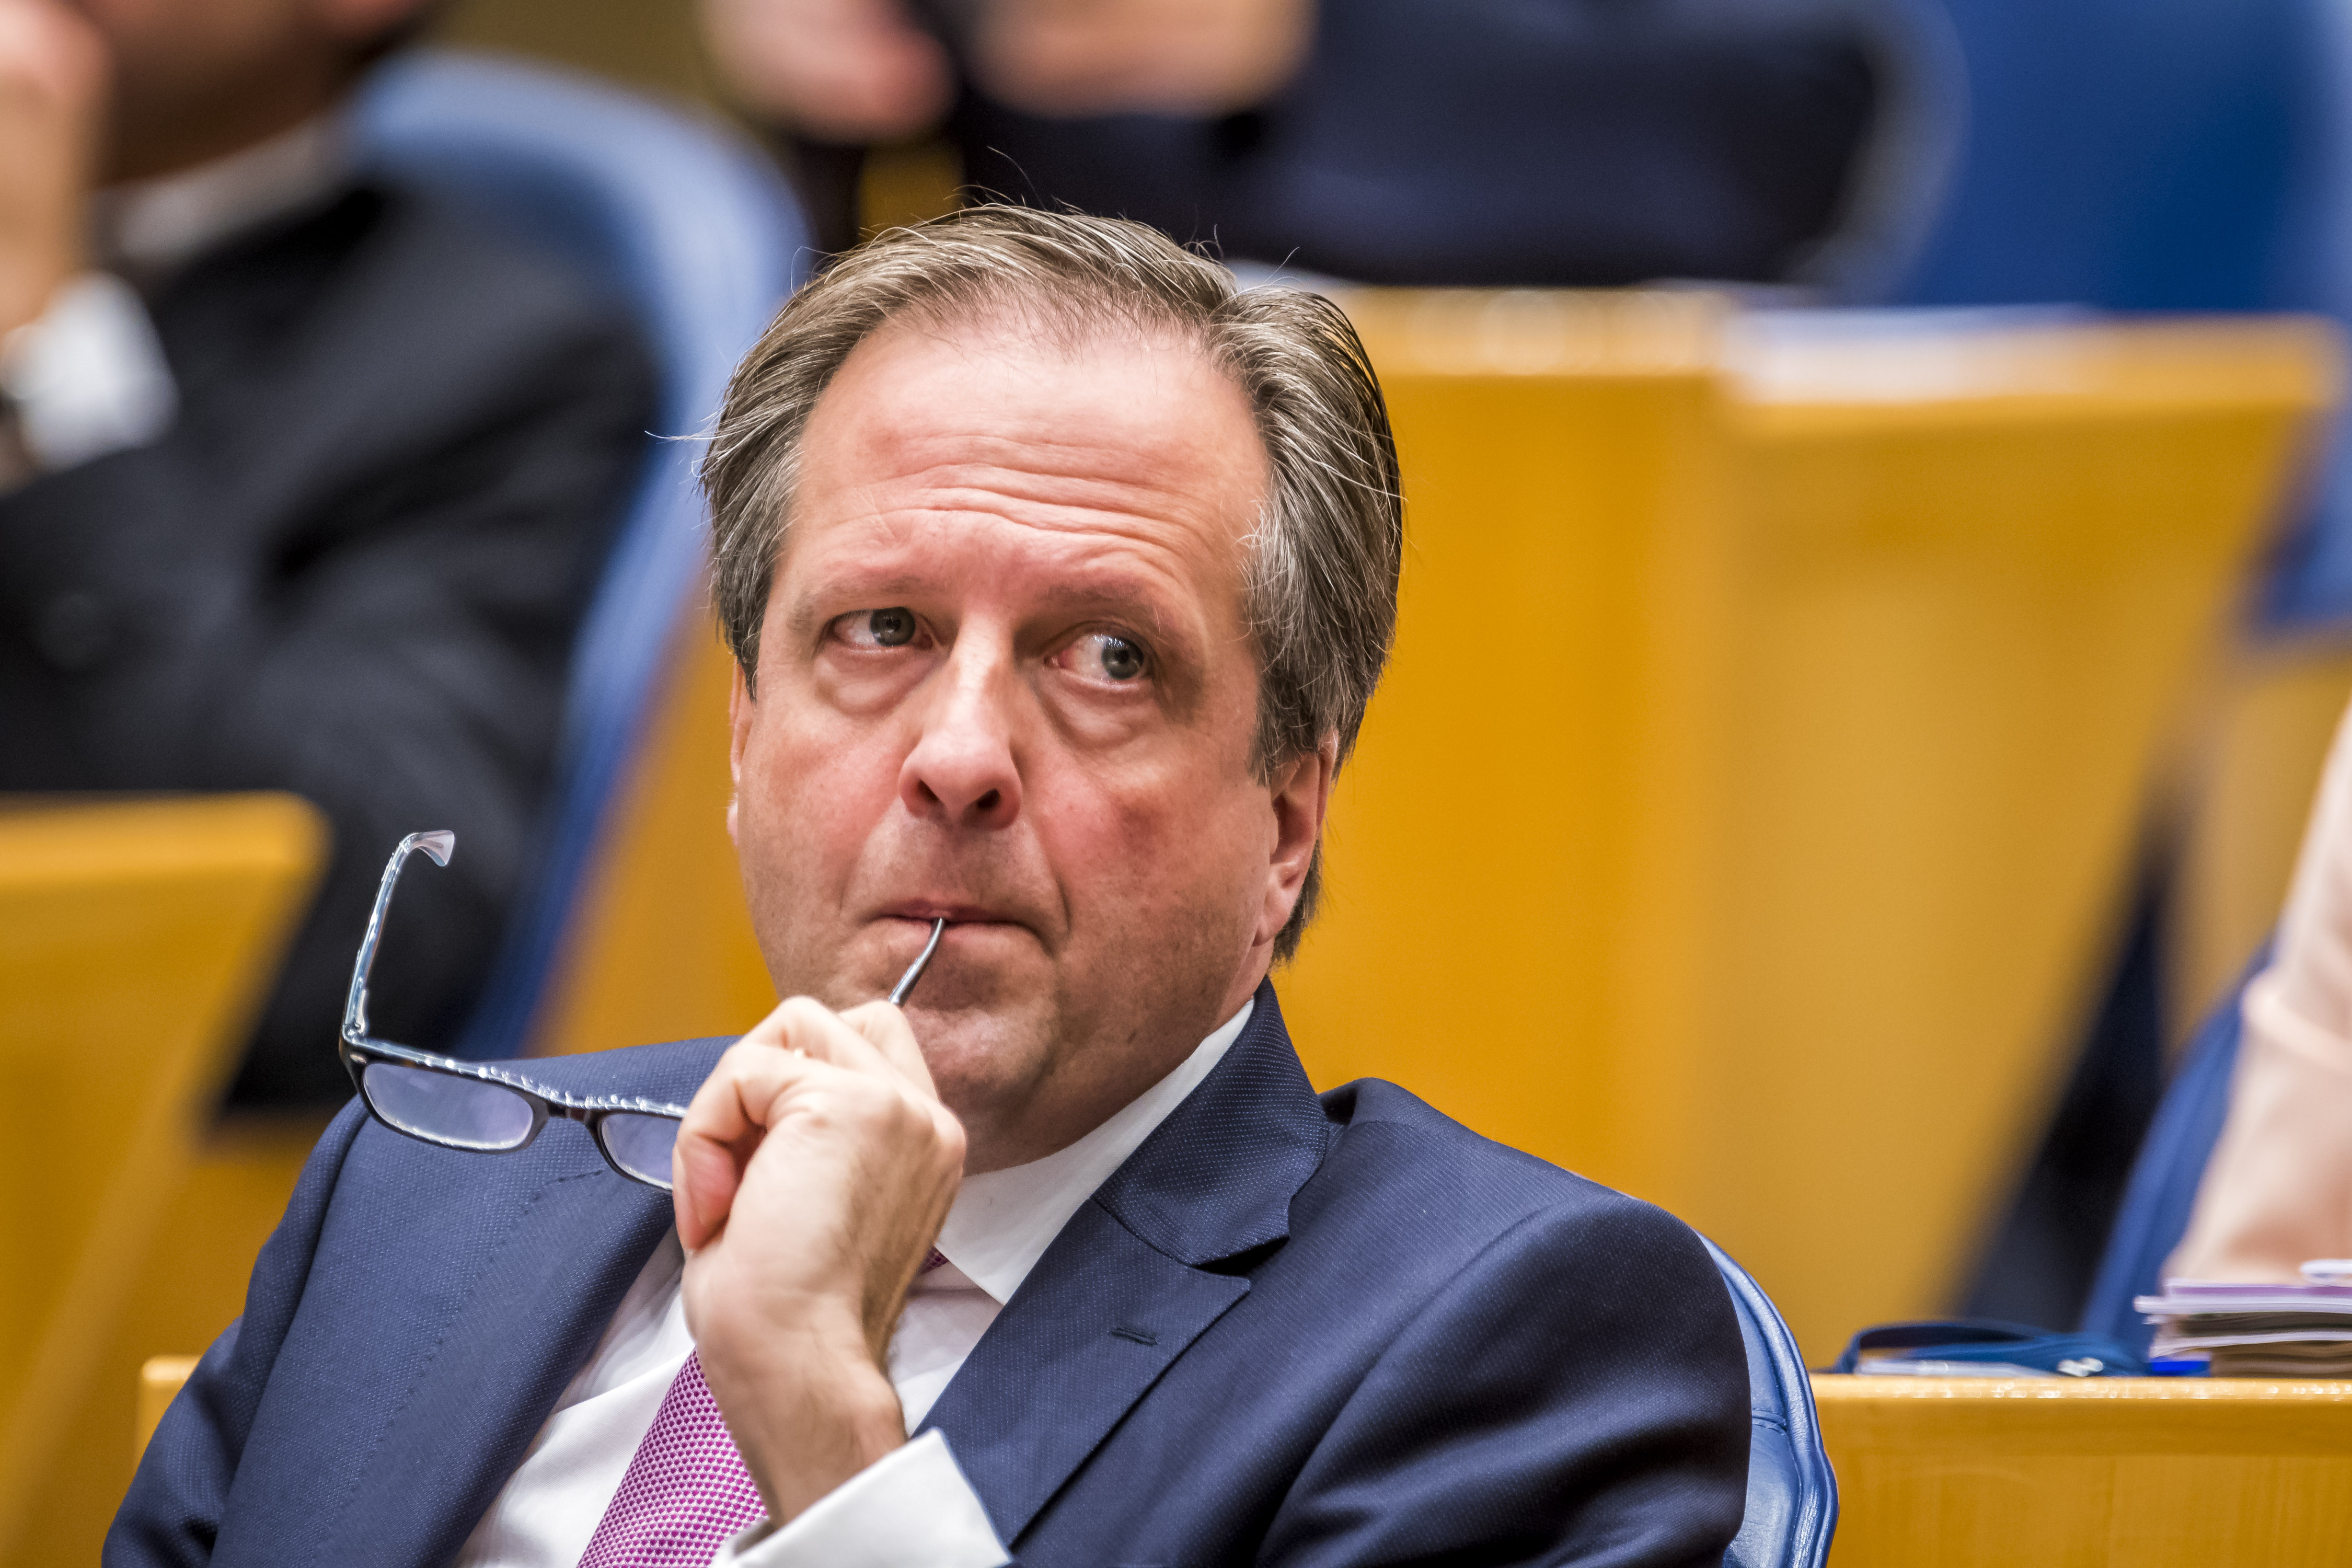 2017-11-01 11:35:35 DEN HAAG - Alexander Pechtold (D66) tijdens een plenair debat in de Tweede Kamer over de regeringsverklaring. ANP LEX VAN LIESHOUT